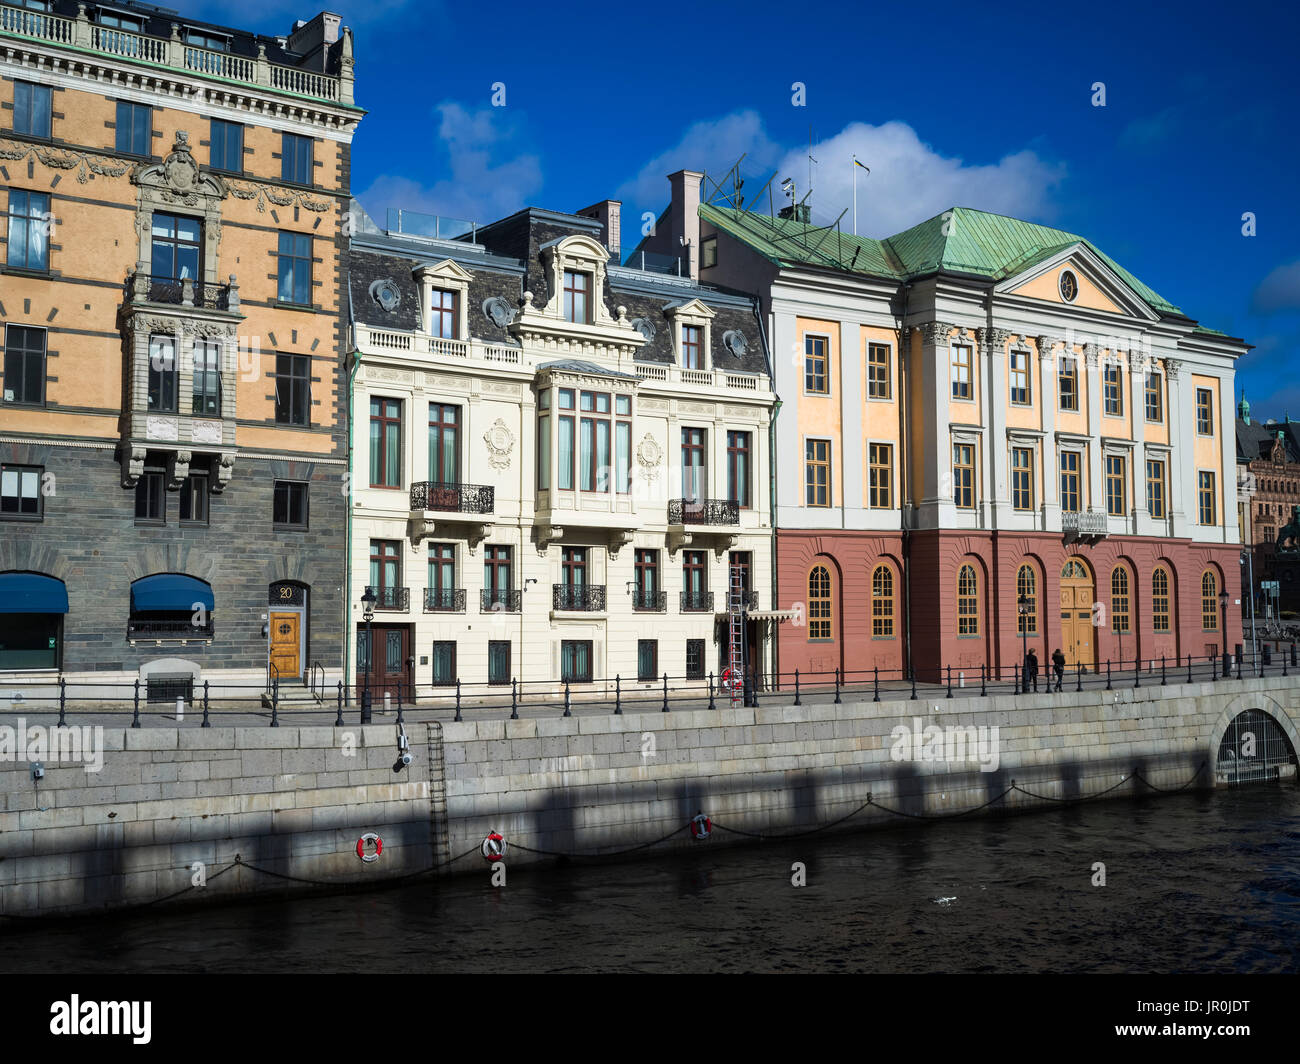 Bâtiments colorés au bord de l'eau, Stockholm, Suède Banque D'Images